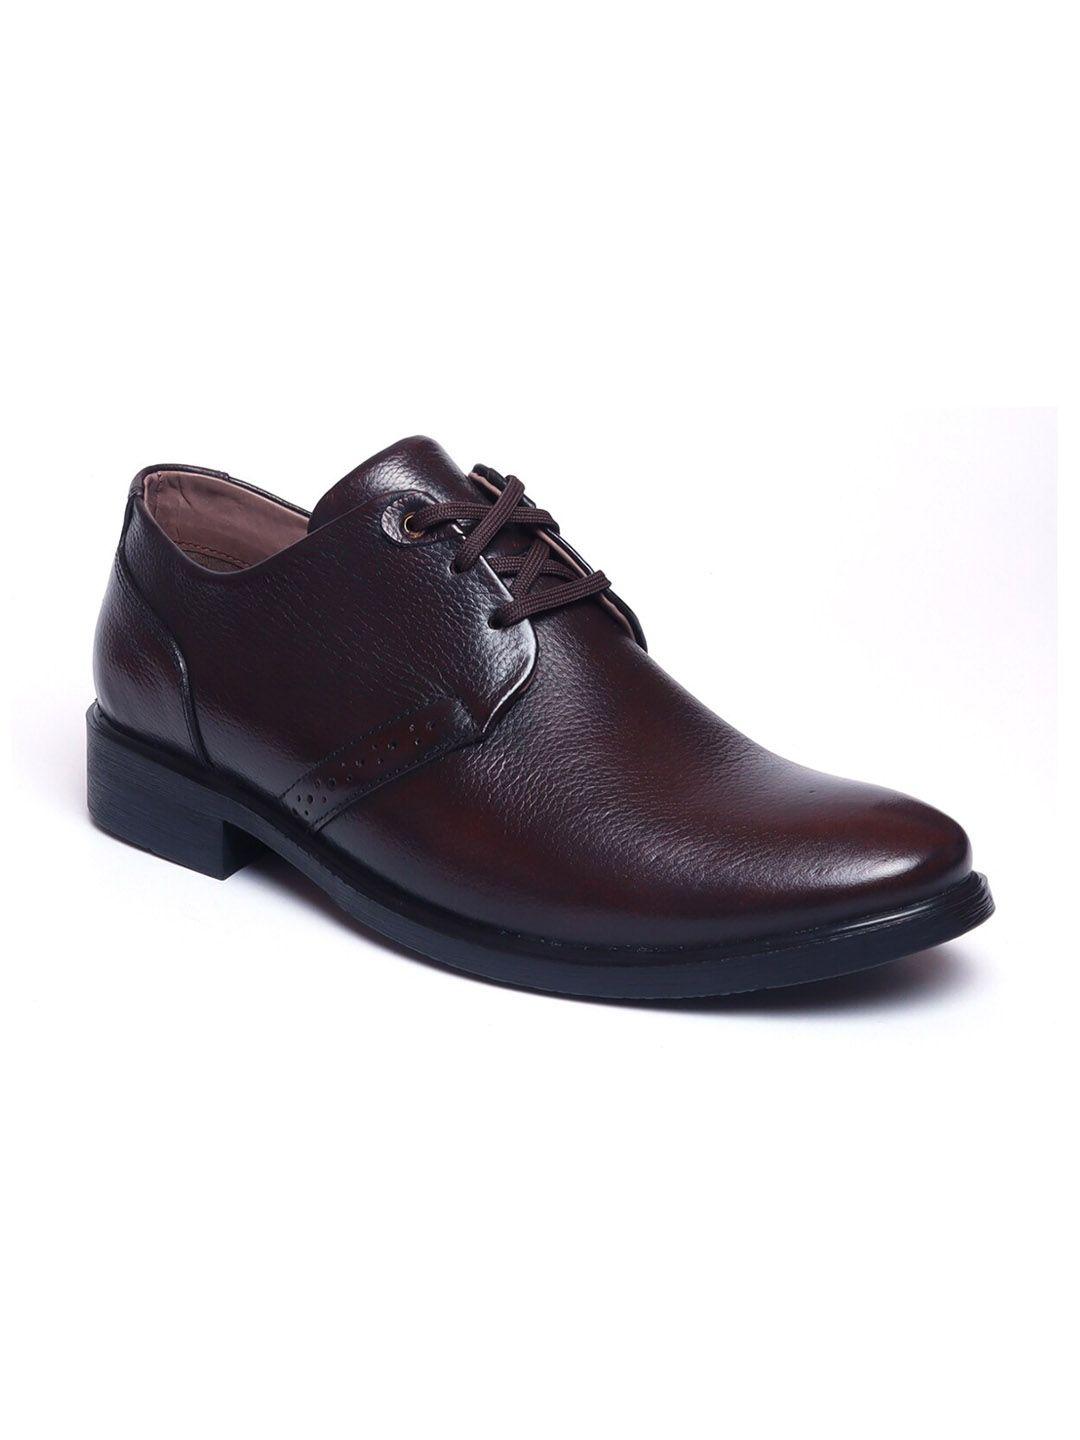 zoom shoes men brown solid formal derbys